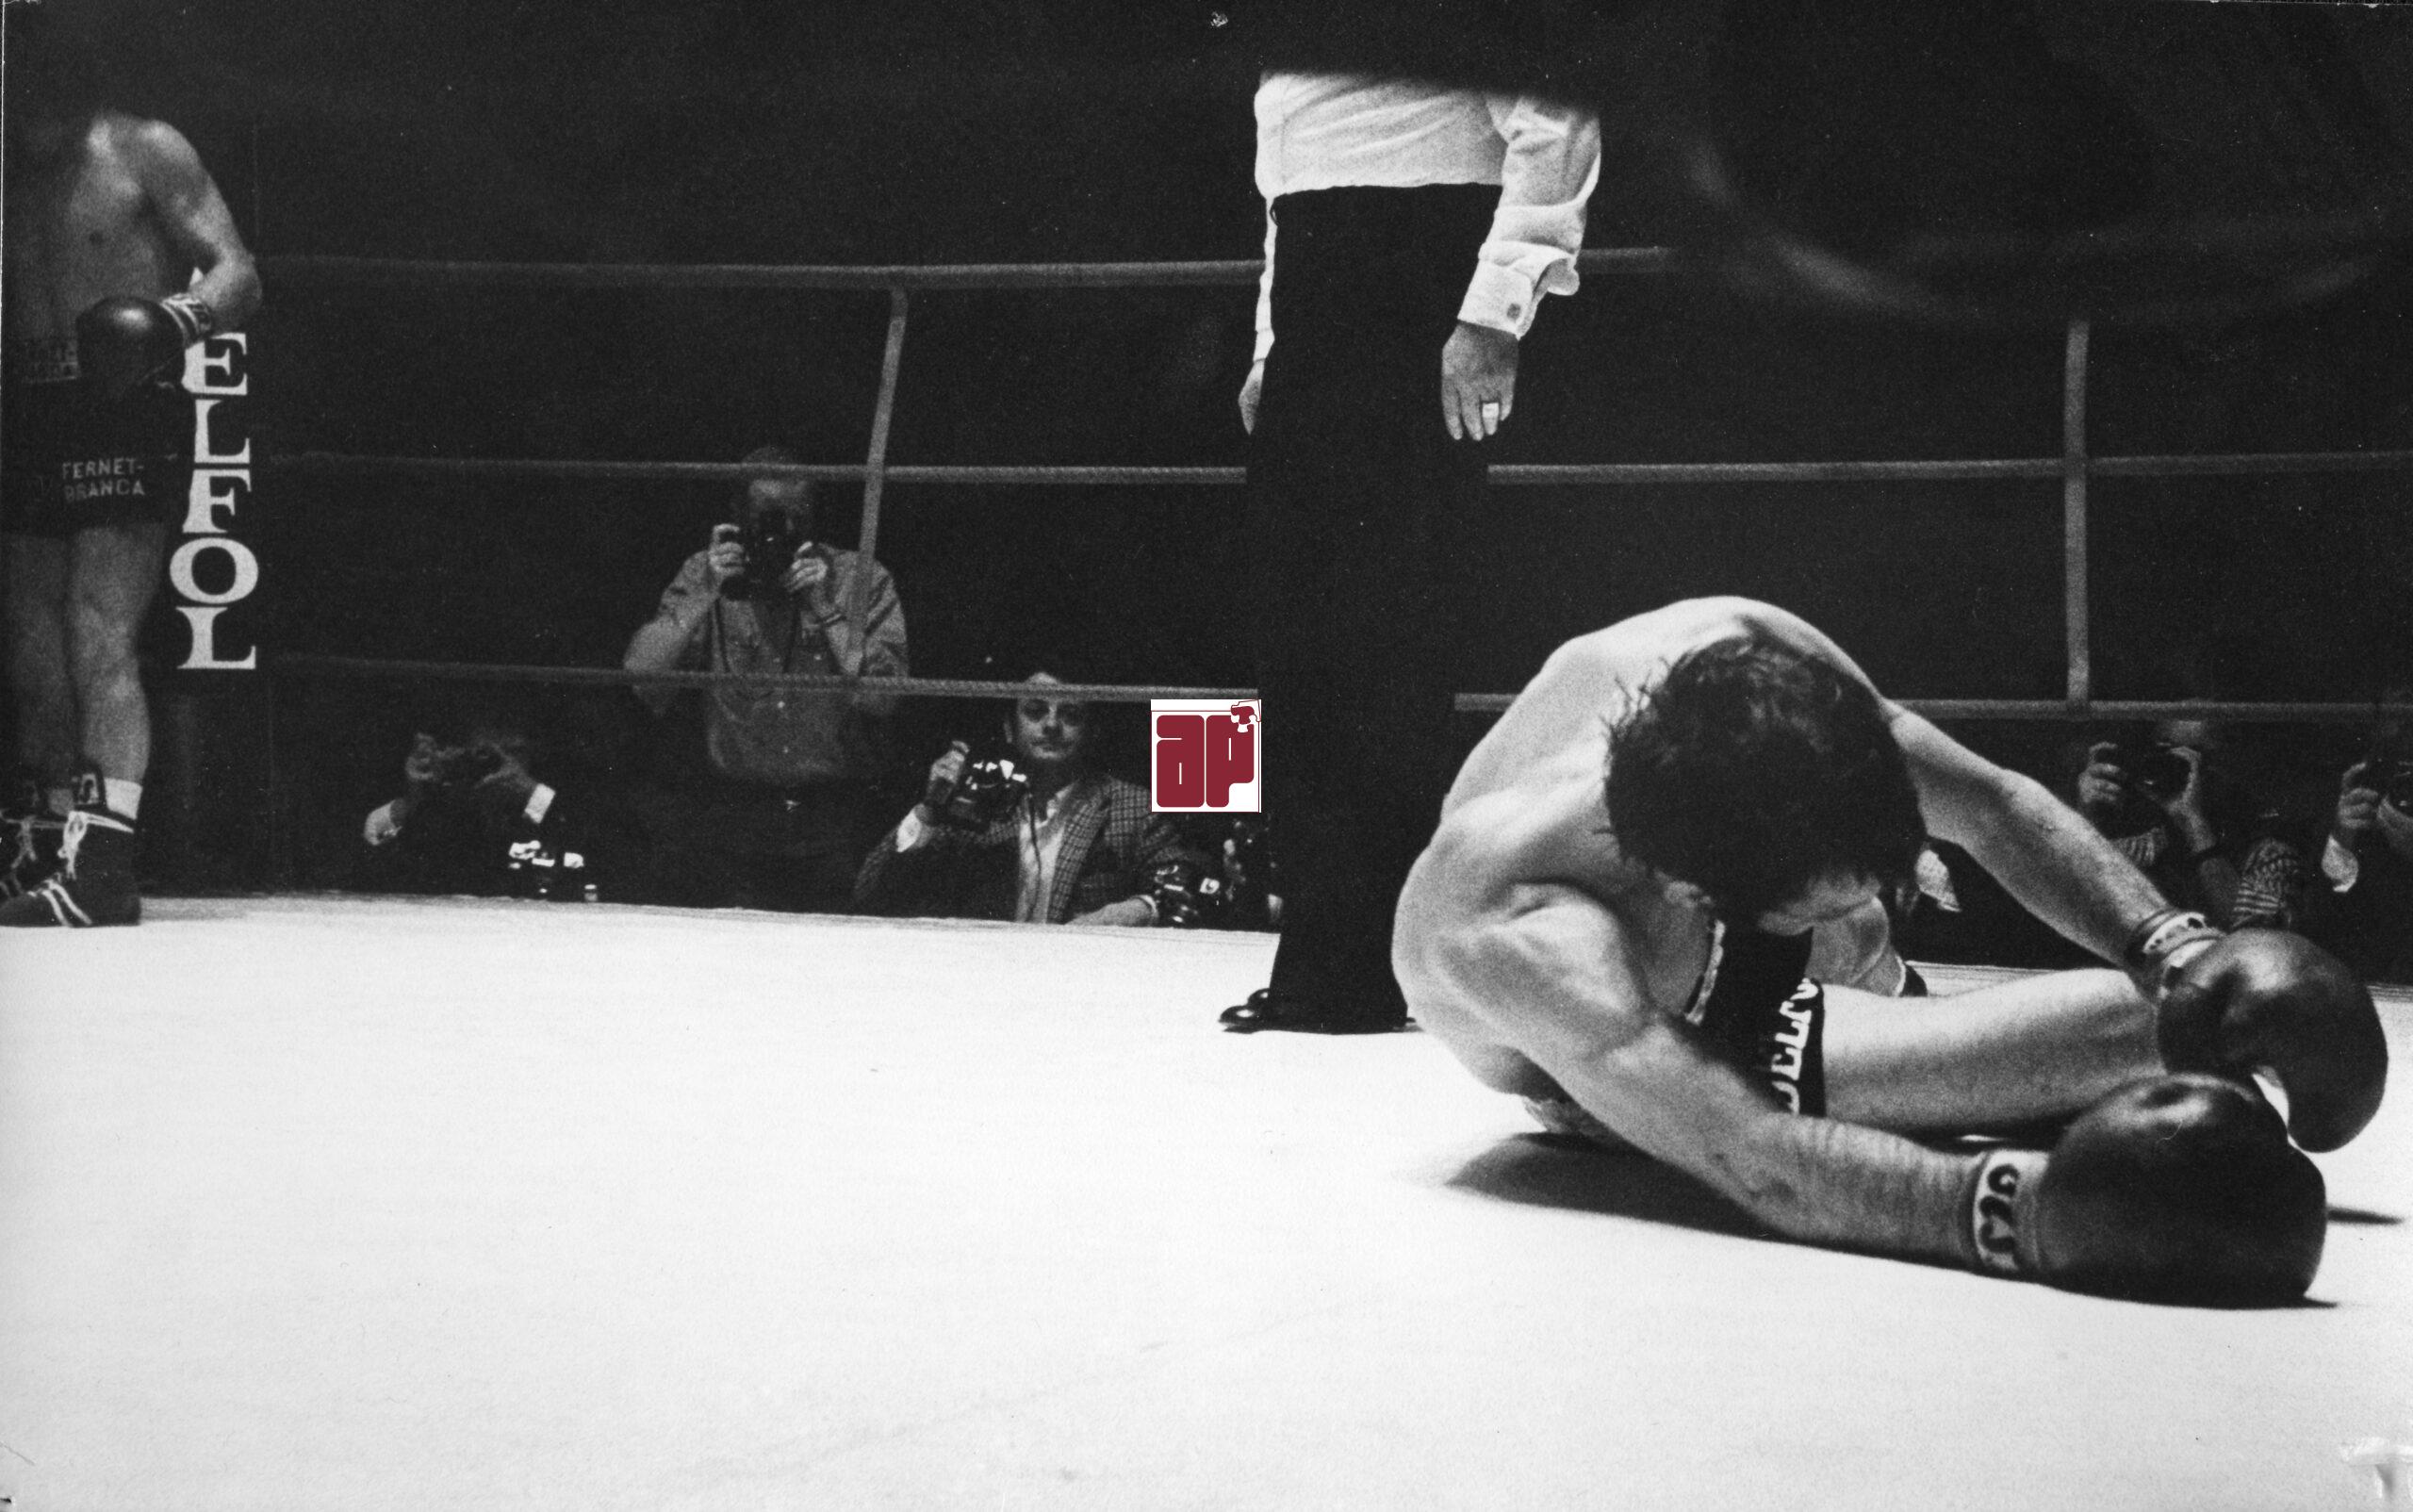 ådan endte VM-kampen for den professionelle bokser Jørgen Hansen, som blev slået ud af verdensmesteren Bruno Arcari fra Italien. KB-Hallen 1. november 1973. (Foto: Erling Madsen)